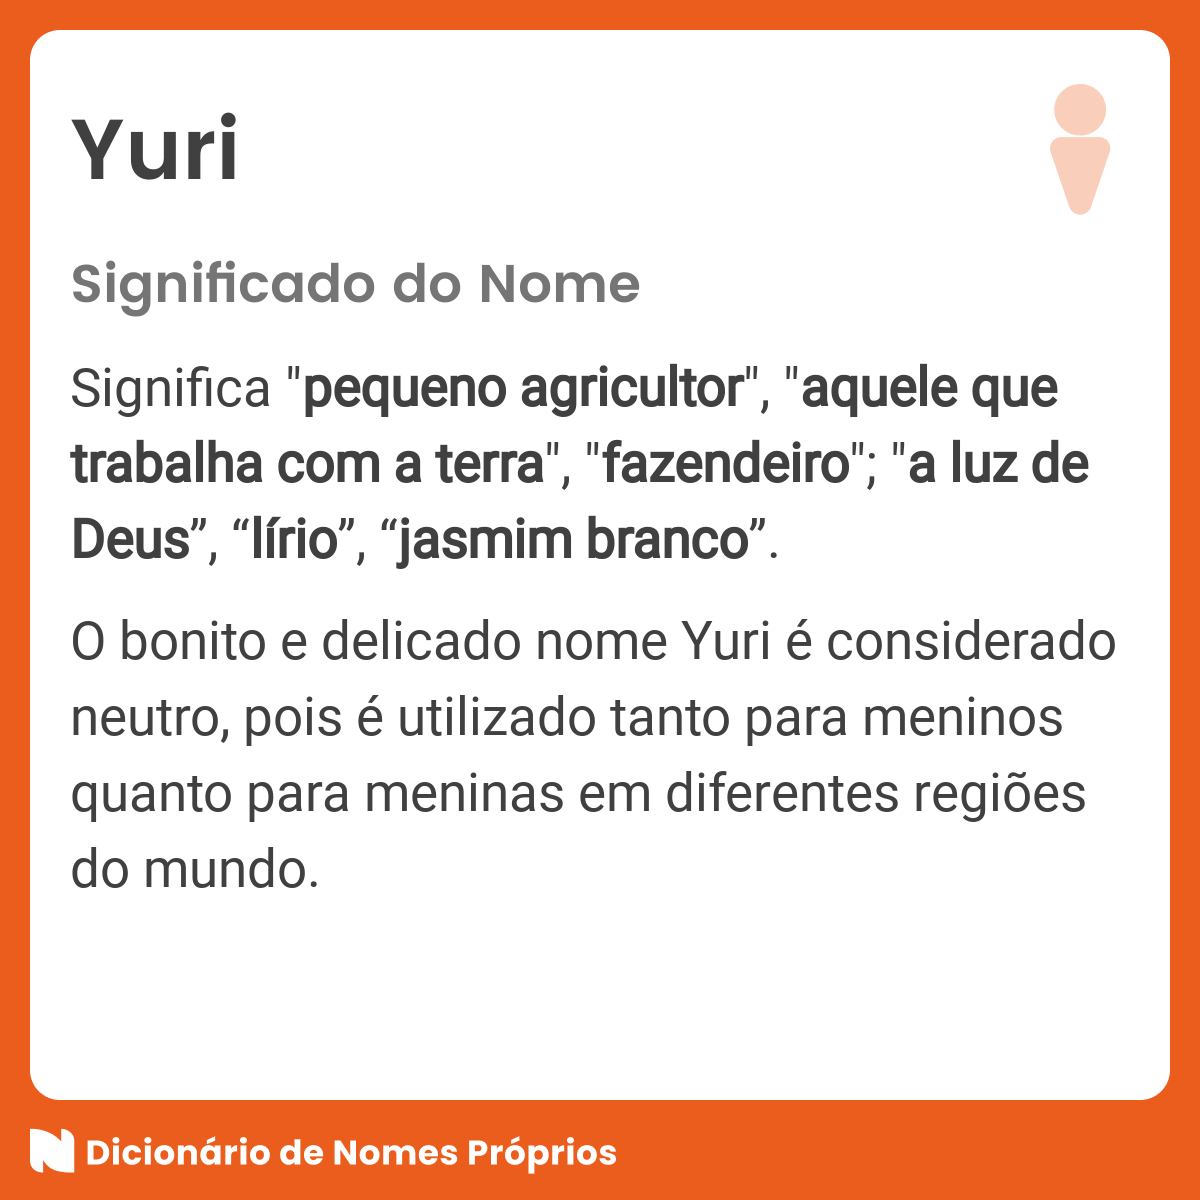 Significado do nome Yuri - Dicionário de Nomes Próprios